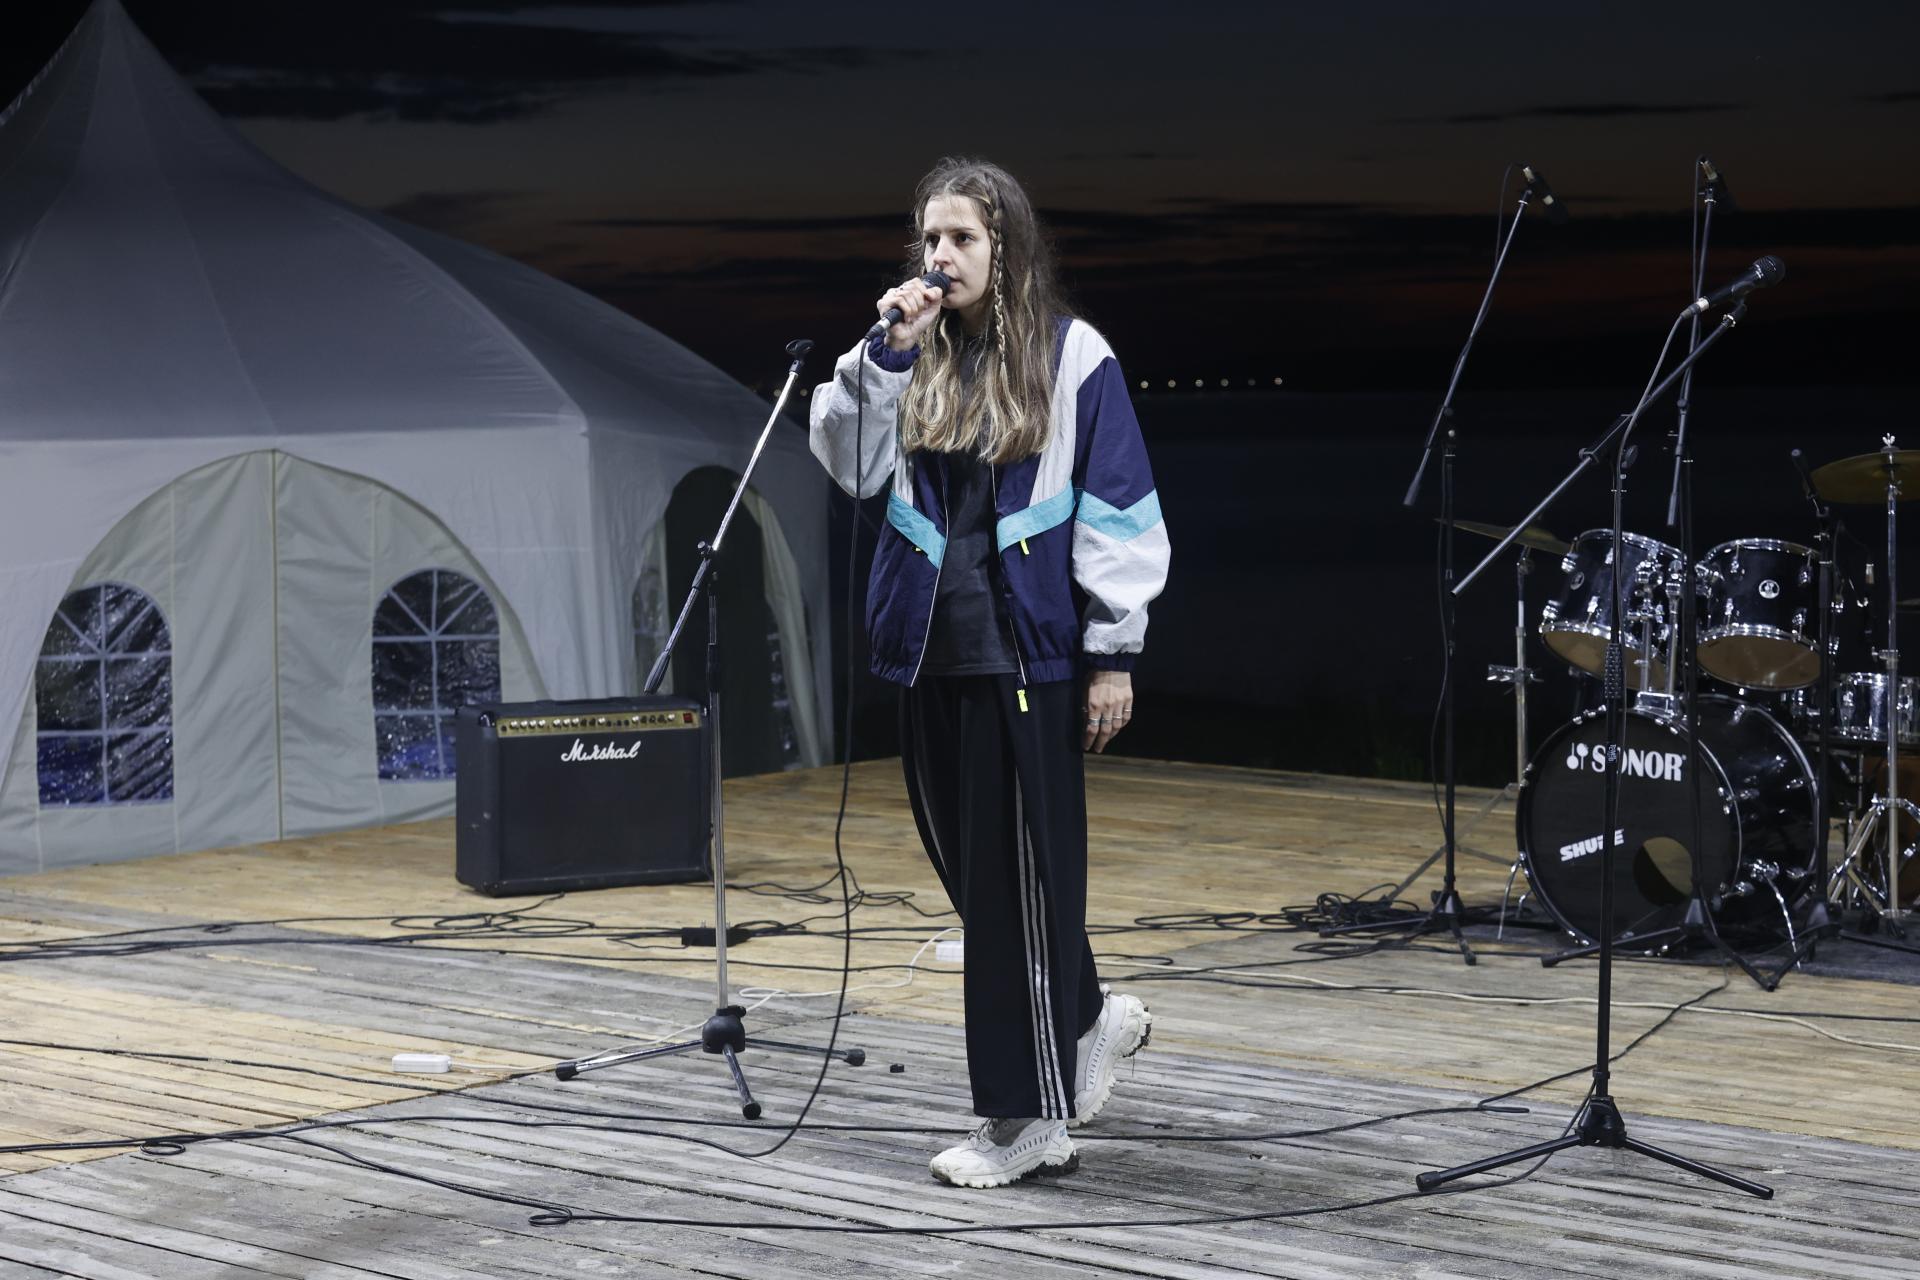 Музыкальный фестиваль на фоне Сурского моря. ЦеСИС НИКИРЭТ